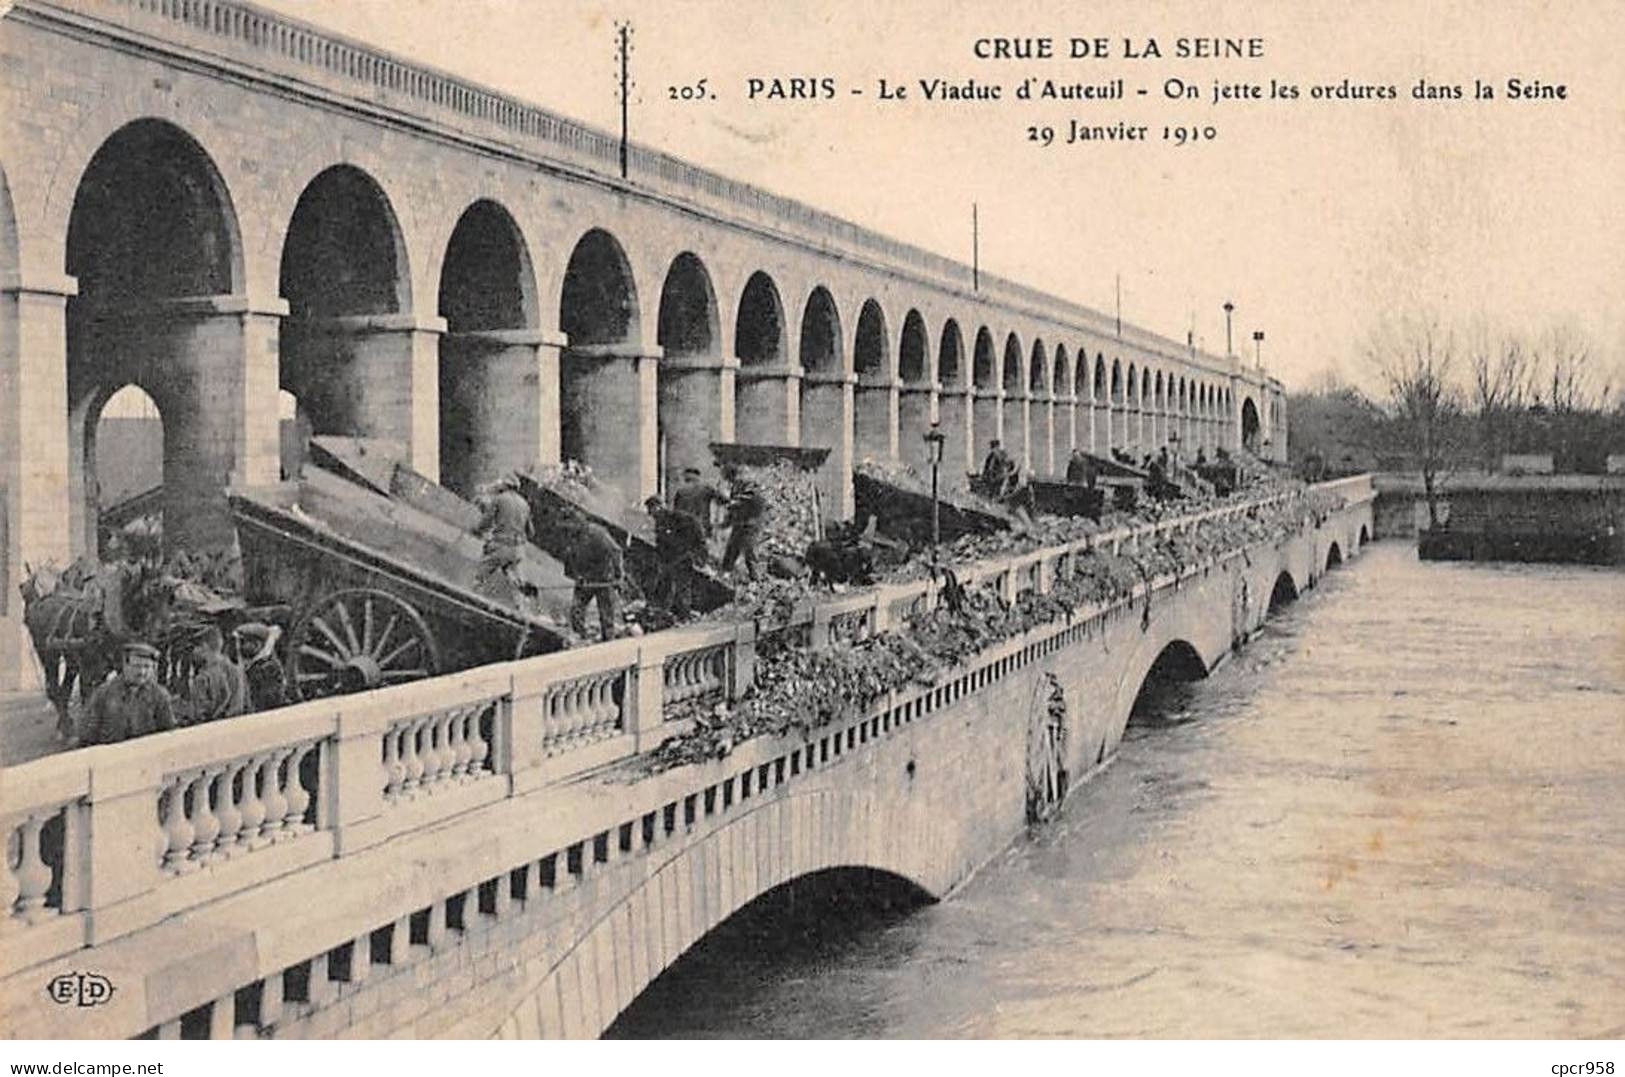 75 - PARIS - SAN55648 - Le Viaduc D'Auteuil - On Jette Les Ordure Dans La Seine - 29 Janvier 1910 - Crue De La Seine - De Overstroming Van 1910